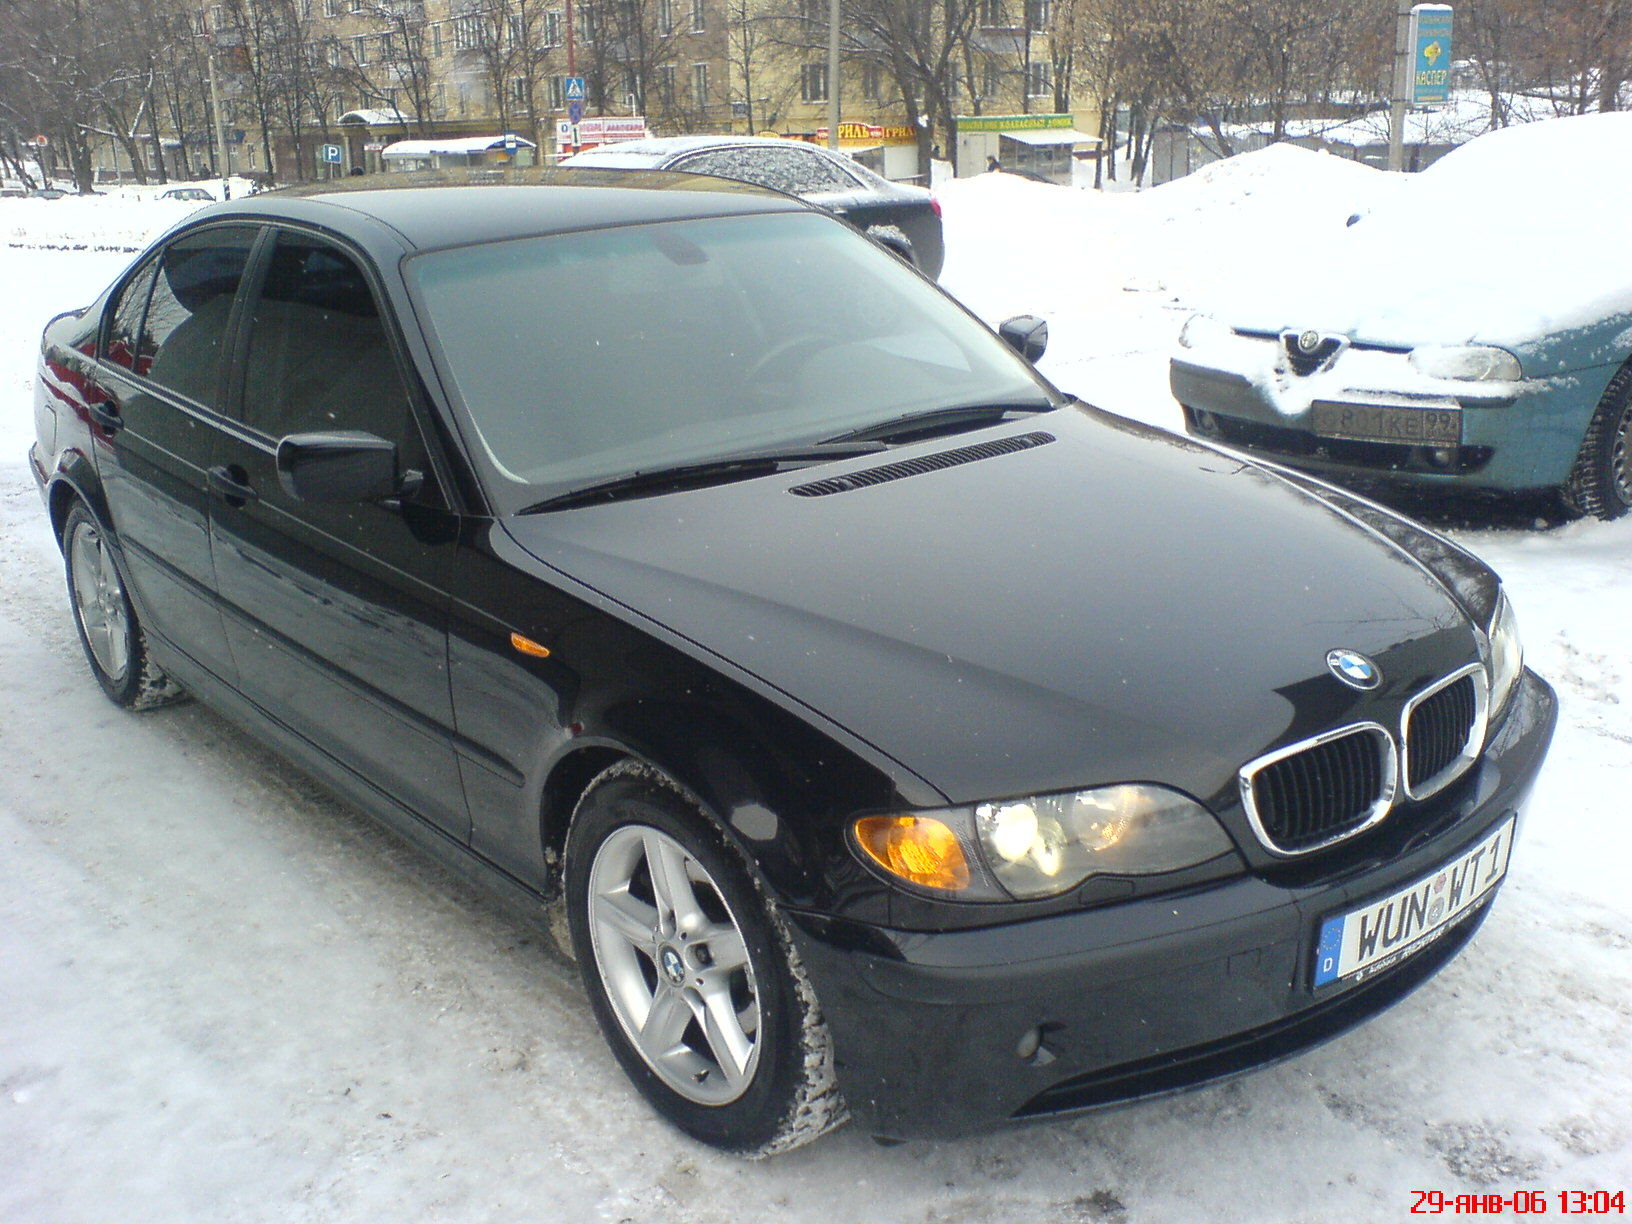 2002 BMW 320. â† Is this a Interier? Yes | No. More photos of BMW 320